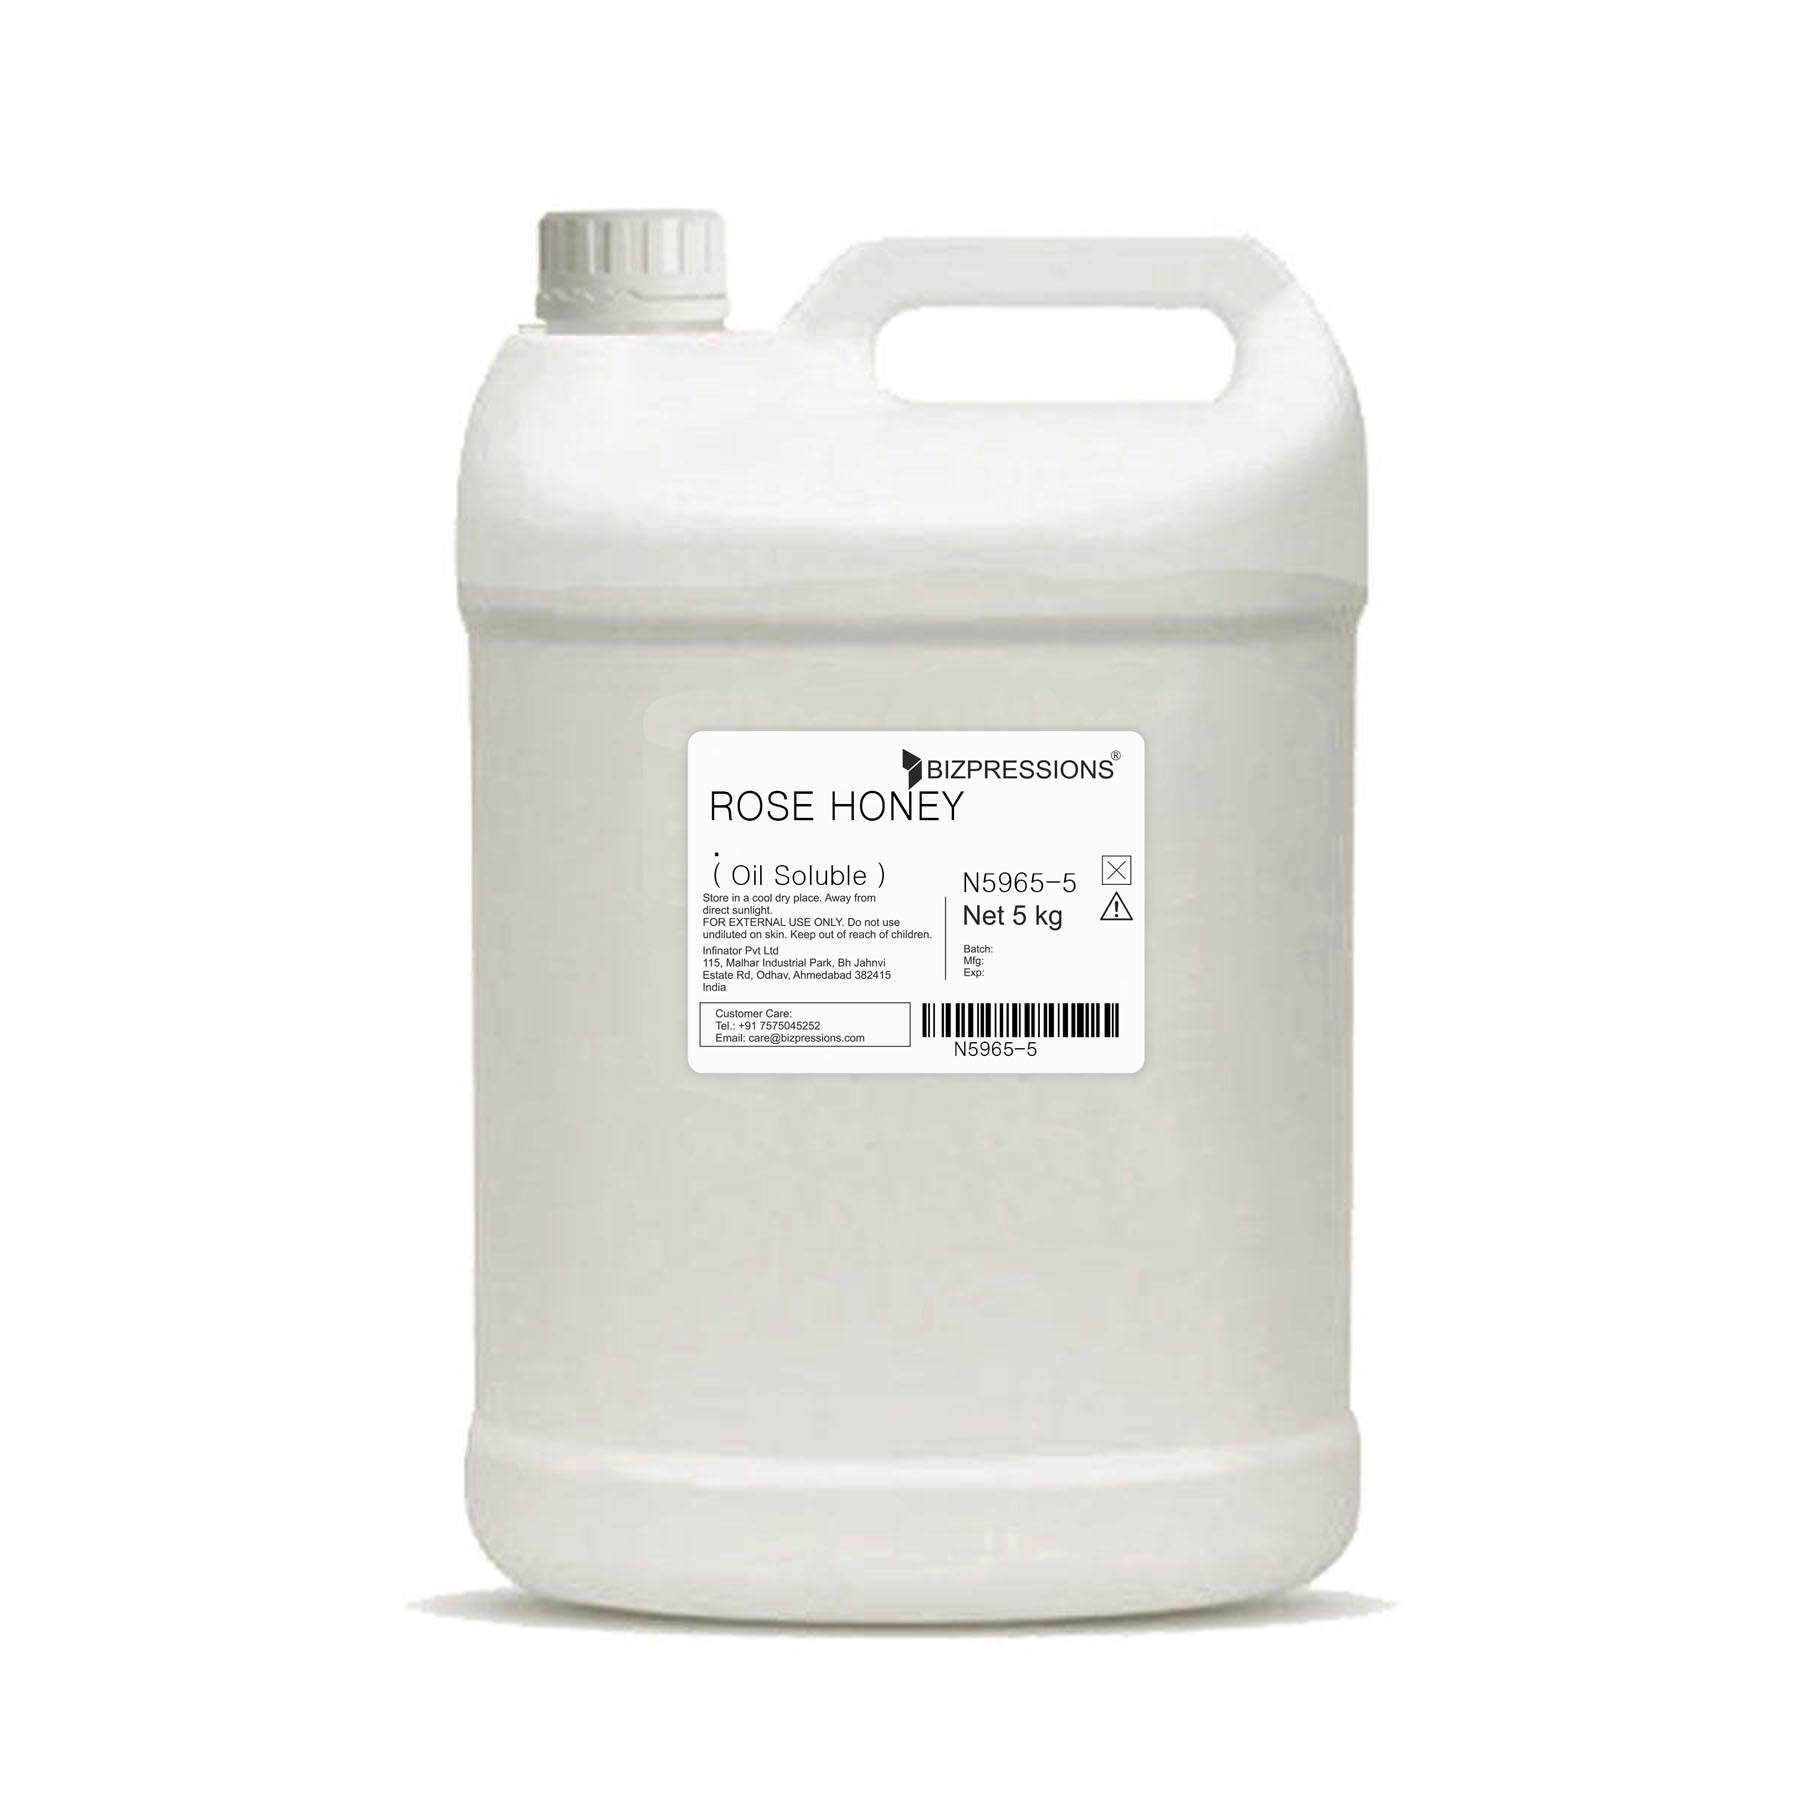 ROSE HONEY - Fragrance ( Oil Soluble ) - 5 kg